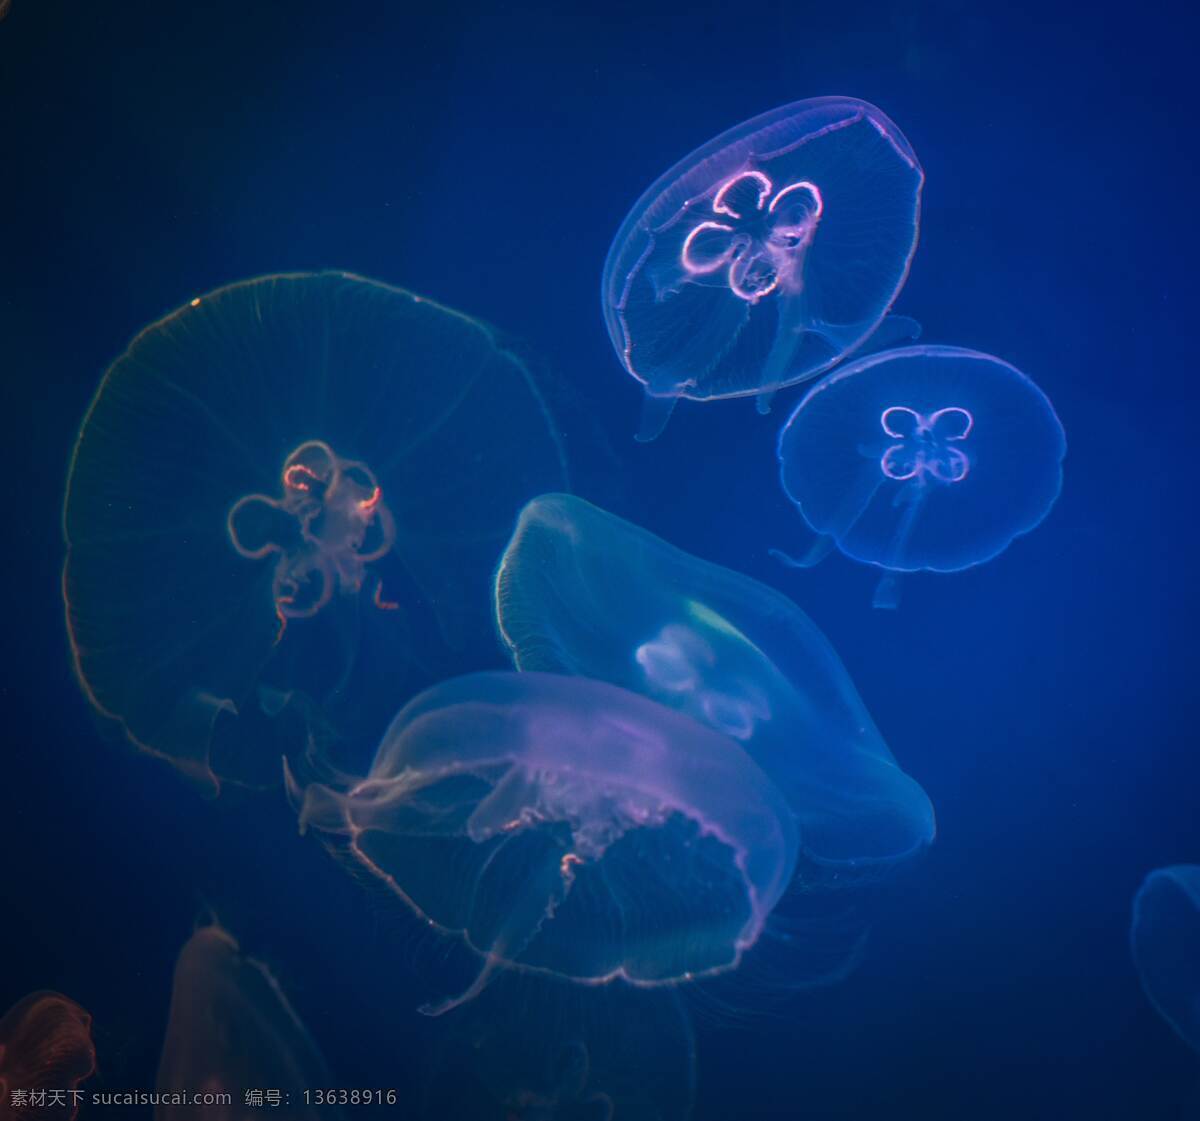 发光水母 鱼 奇妙 海洋 生物 大海 世界 鱼类生物世界 海洋生物 海底世界 生物世界